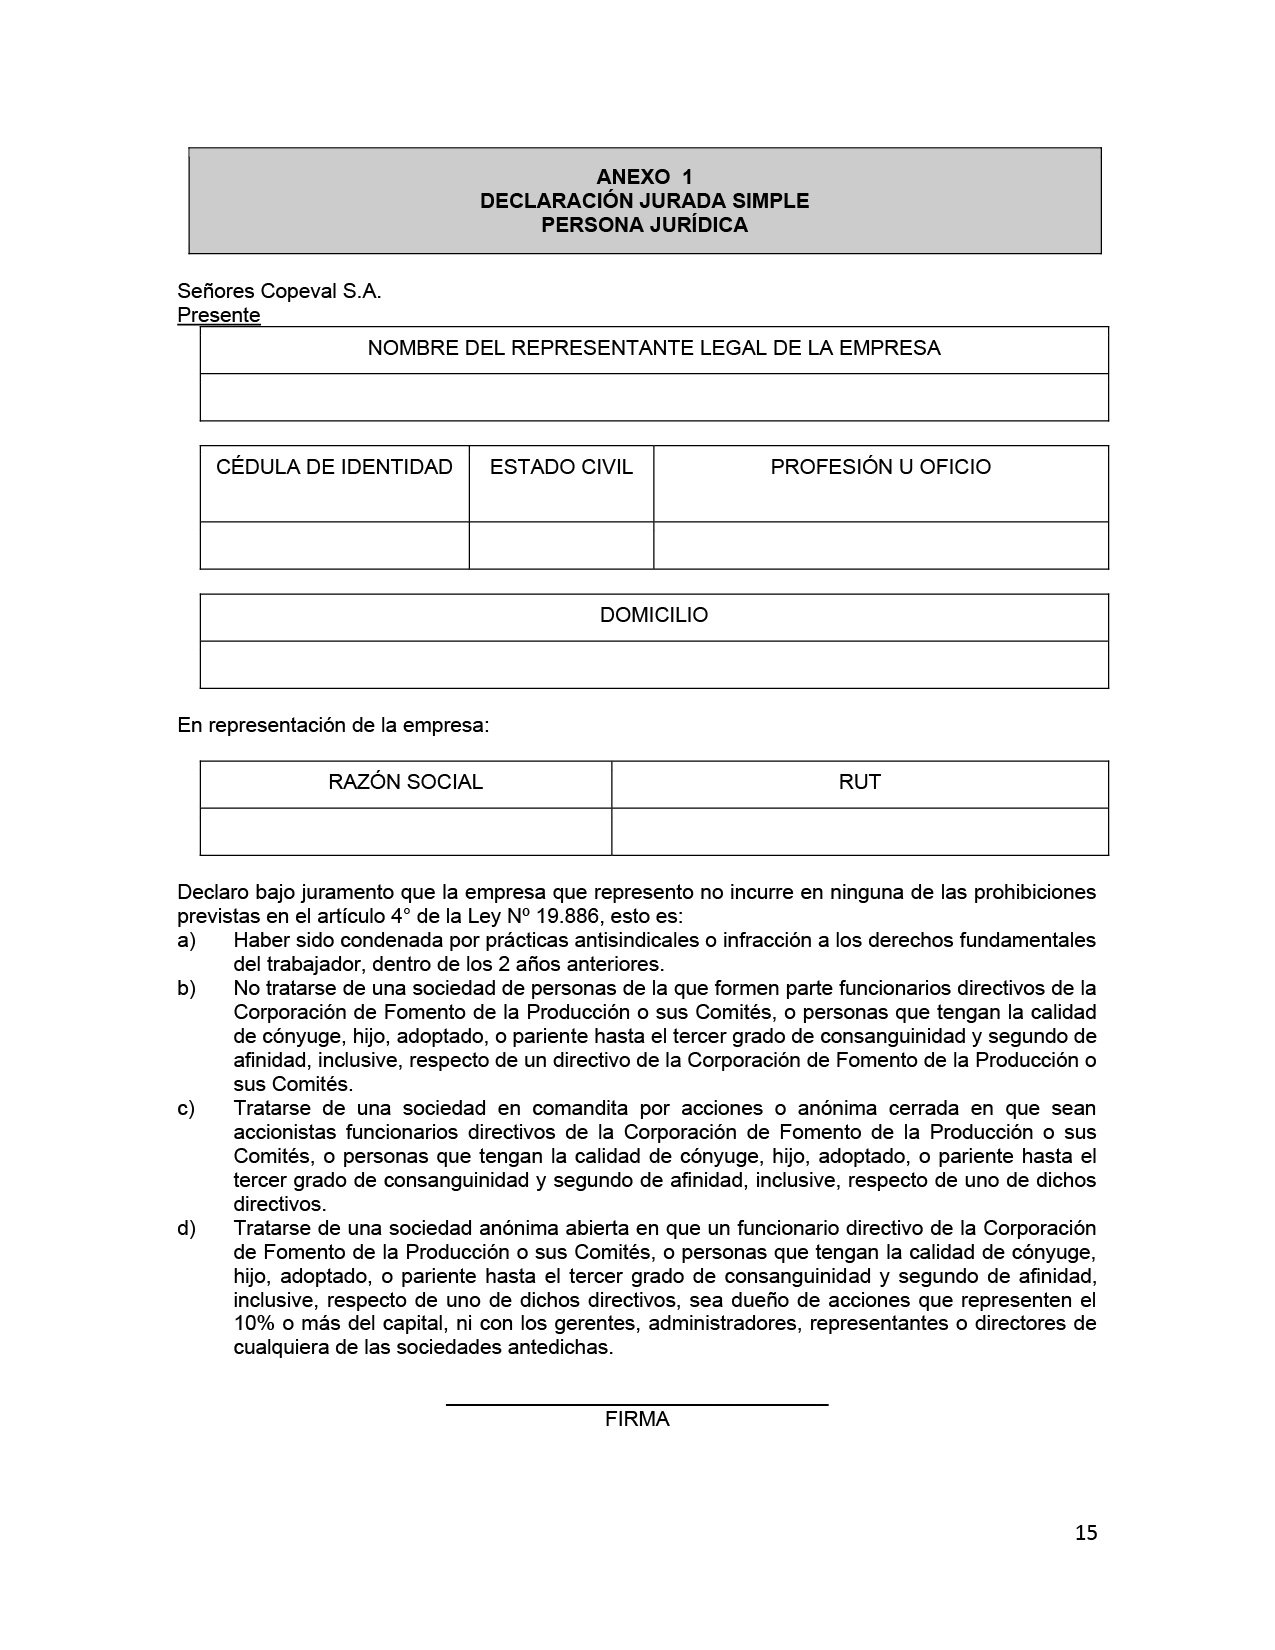 TDR Consultoría catálogo proveedores-v2-15